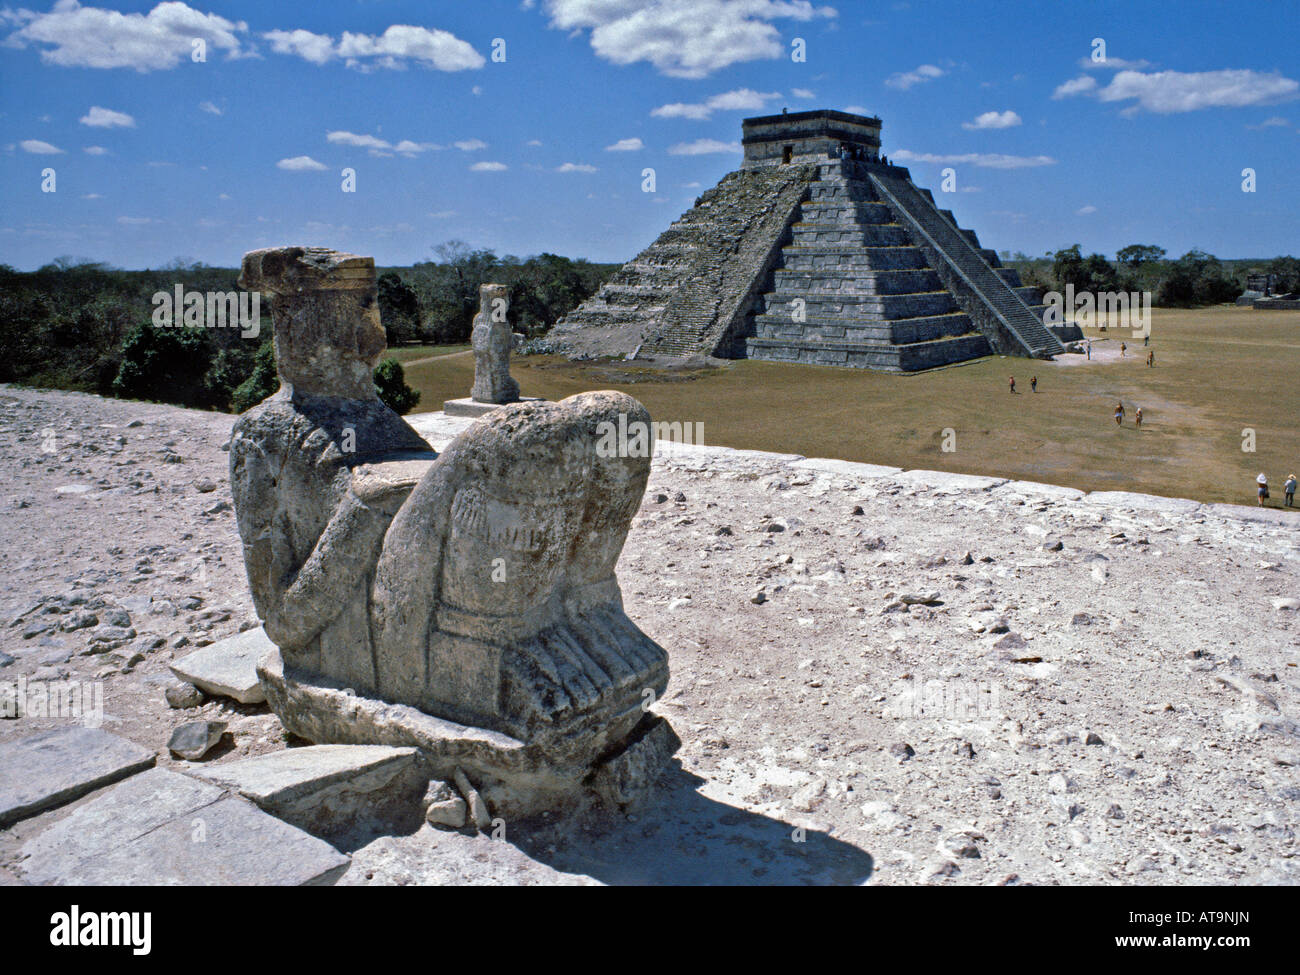 Pyramide et statue sur le site de Chichen Itza au Mexique Yucatan Banque D'Images